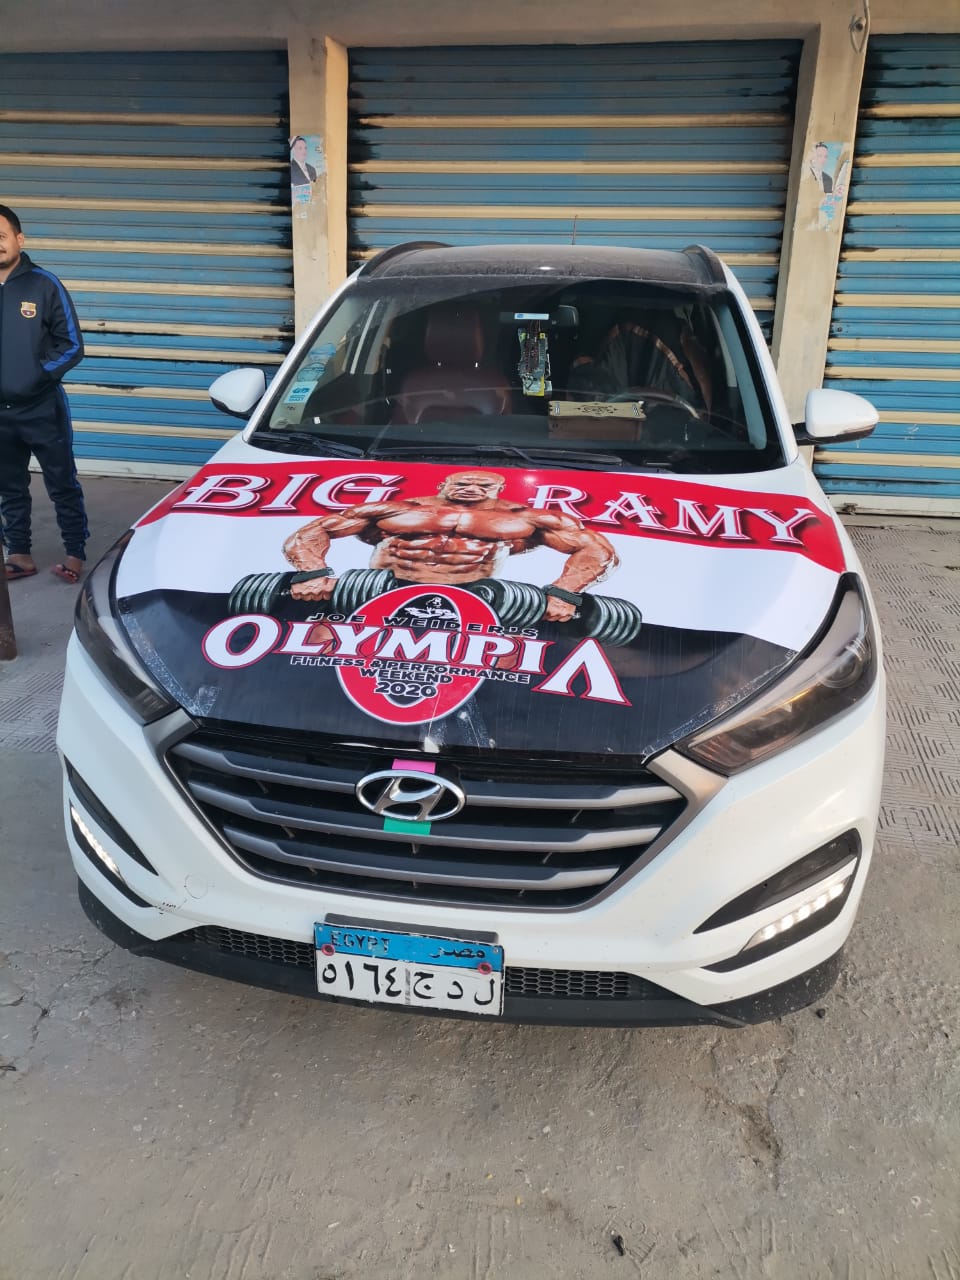 مسيرة بالسيارات وشياب يرتدون تيشرت عليها صورة رامي السبيعي لاستقباله (12)